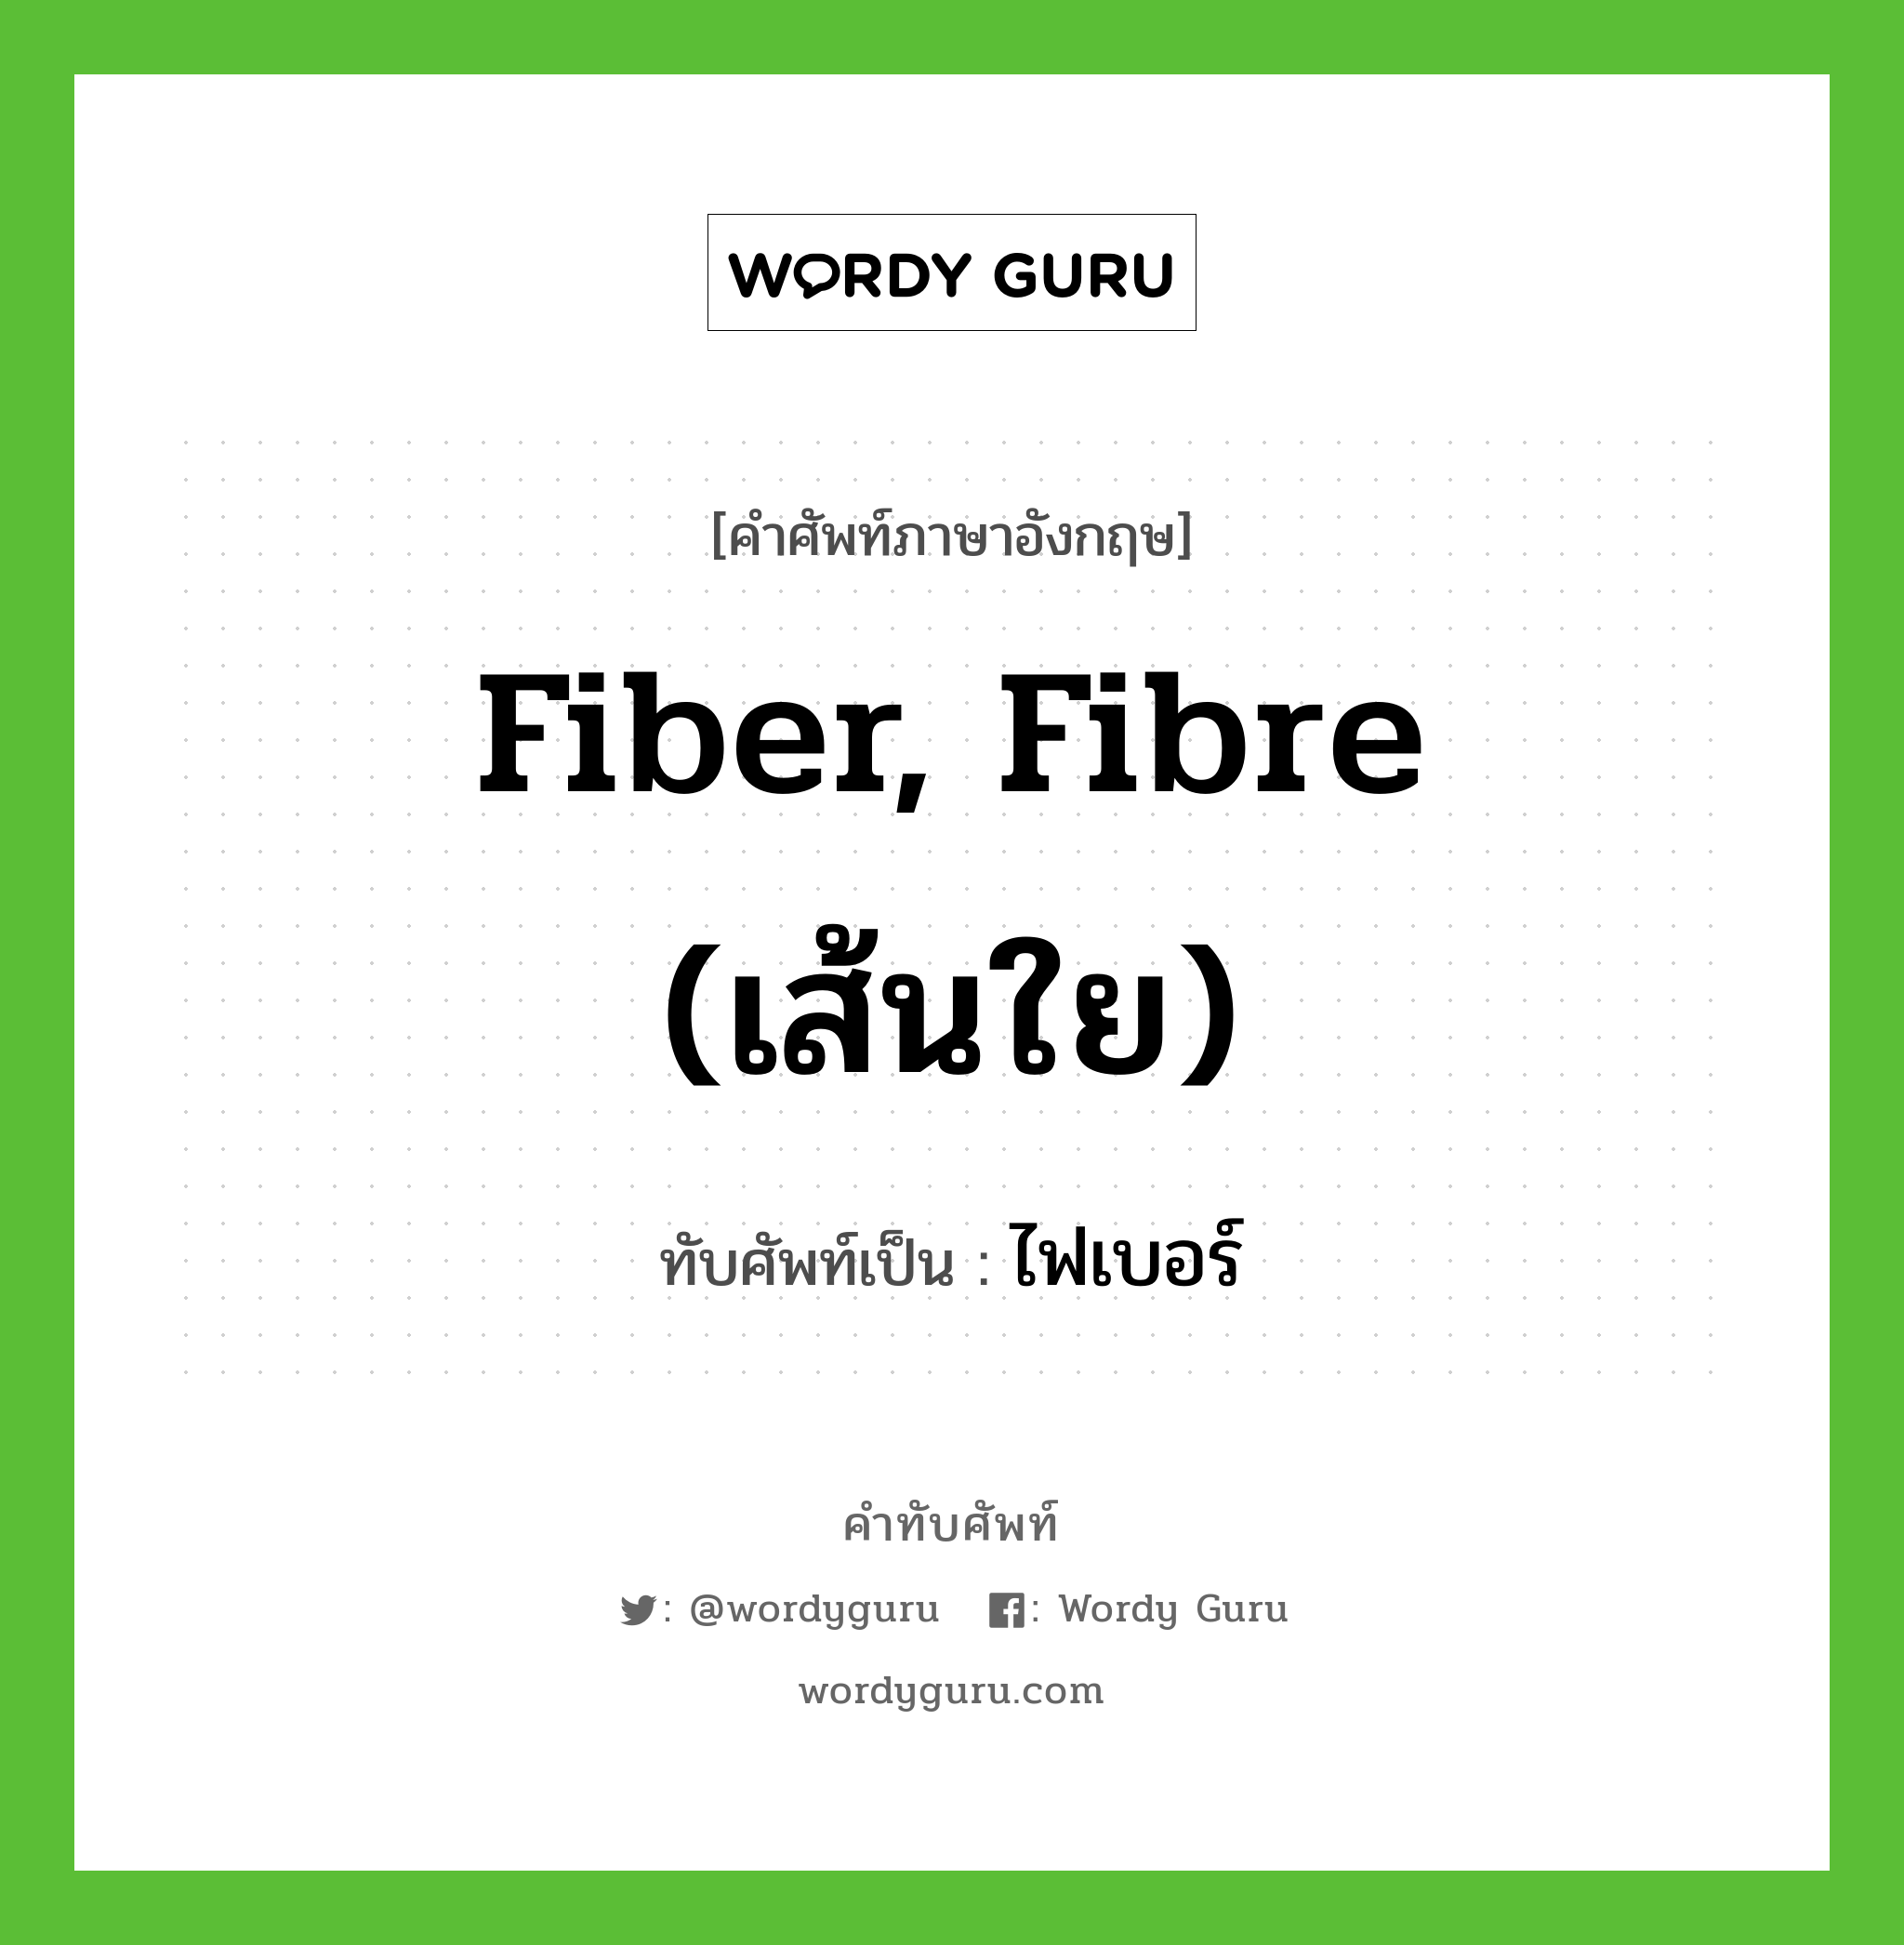 ไฟเบอร์ เขียนอย่างไร?, คำศัพท์ภาษาอังกฤษ ไฟเบอร์ ทับศัพท์เป็น fiber, fibre (เส้นใย)